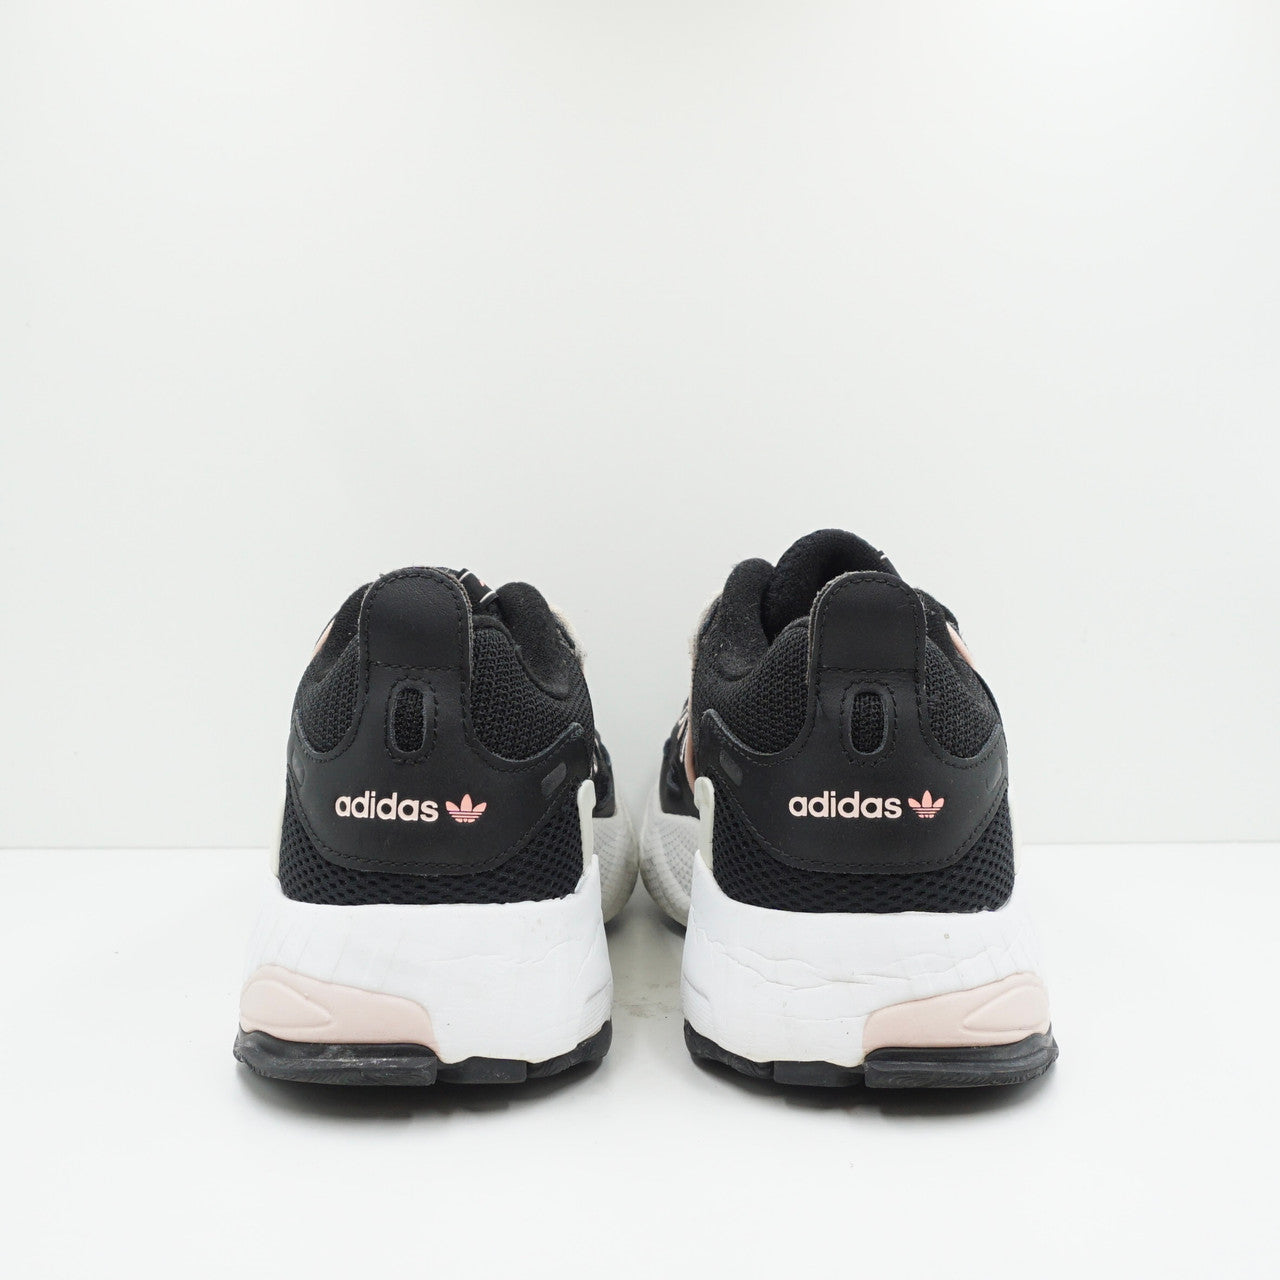 Adidas EQT Gazelle Black Pink (W)